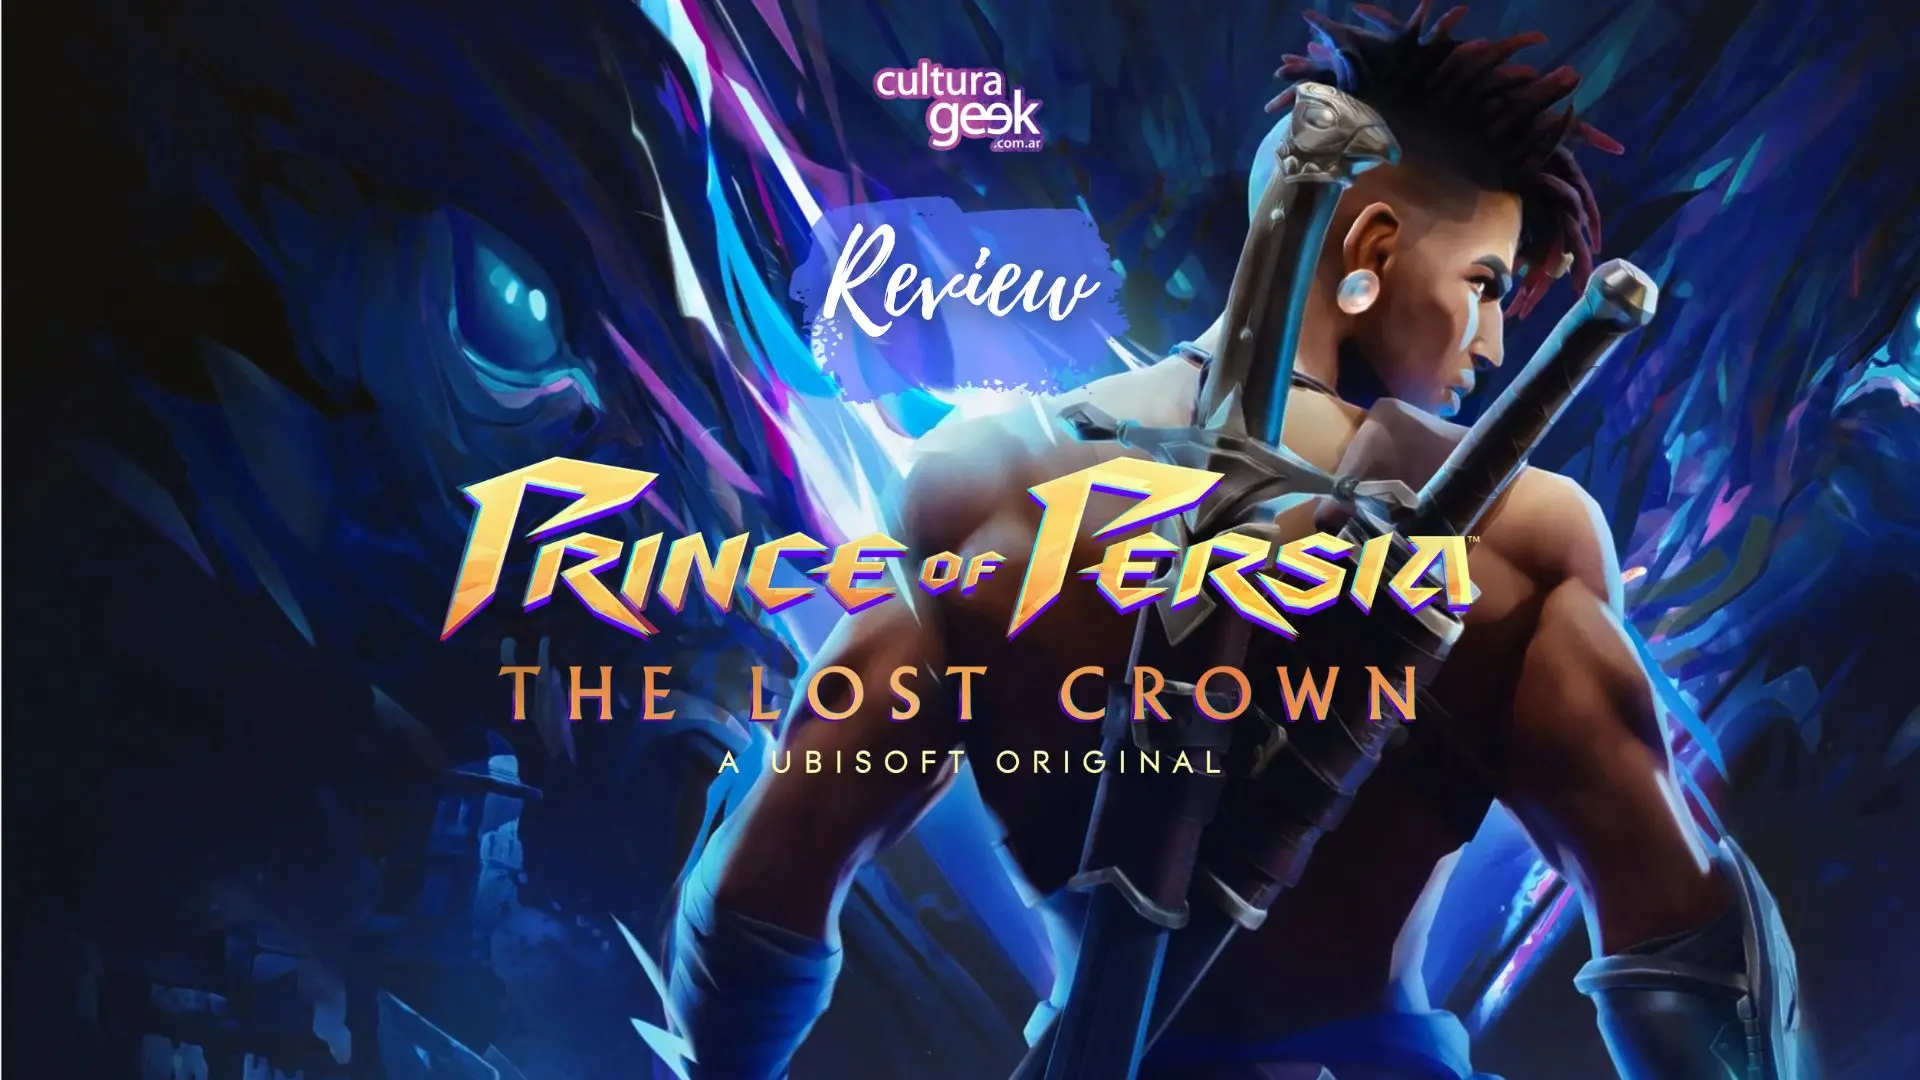 Impresiones Prince of Persia: The Lost Crown - Un serio candidato al podio  de los 'metroidvanias